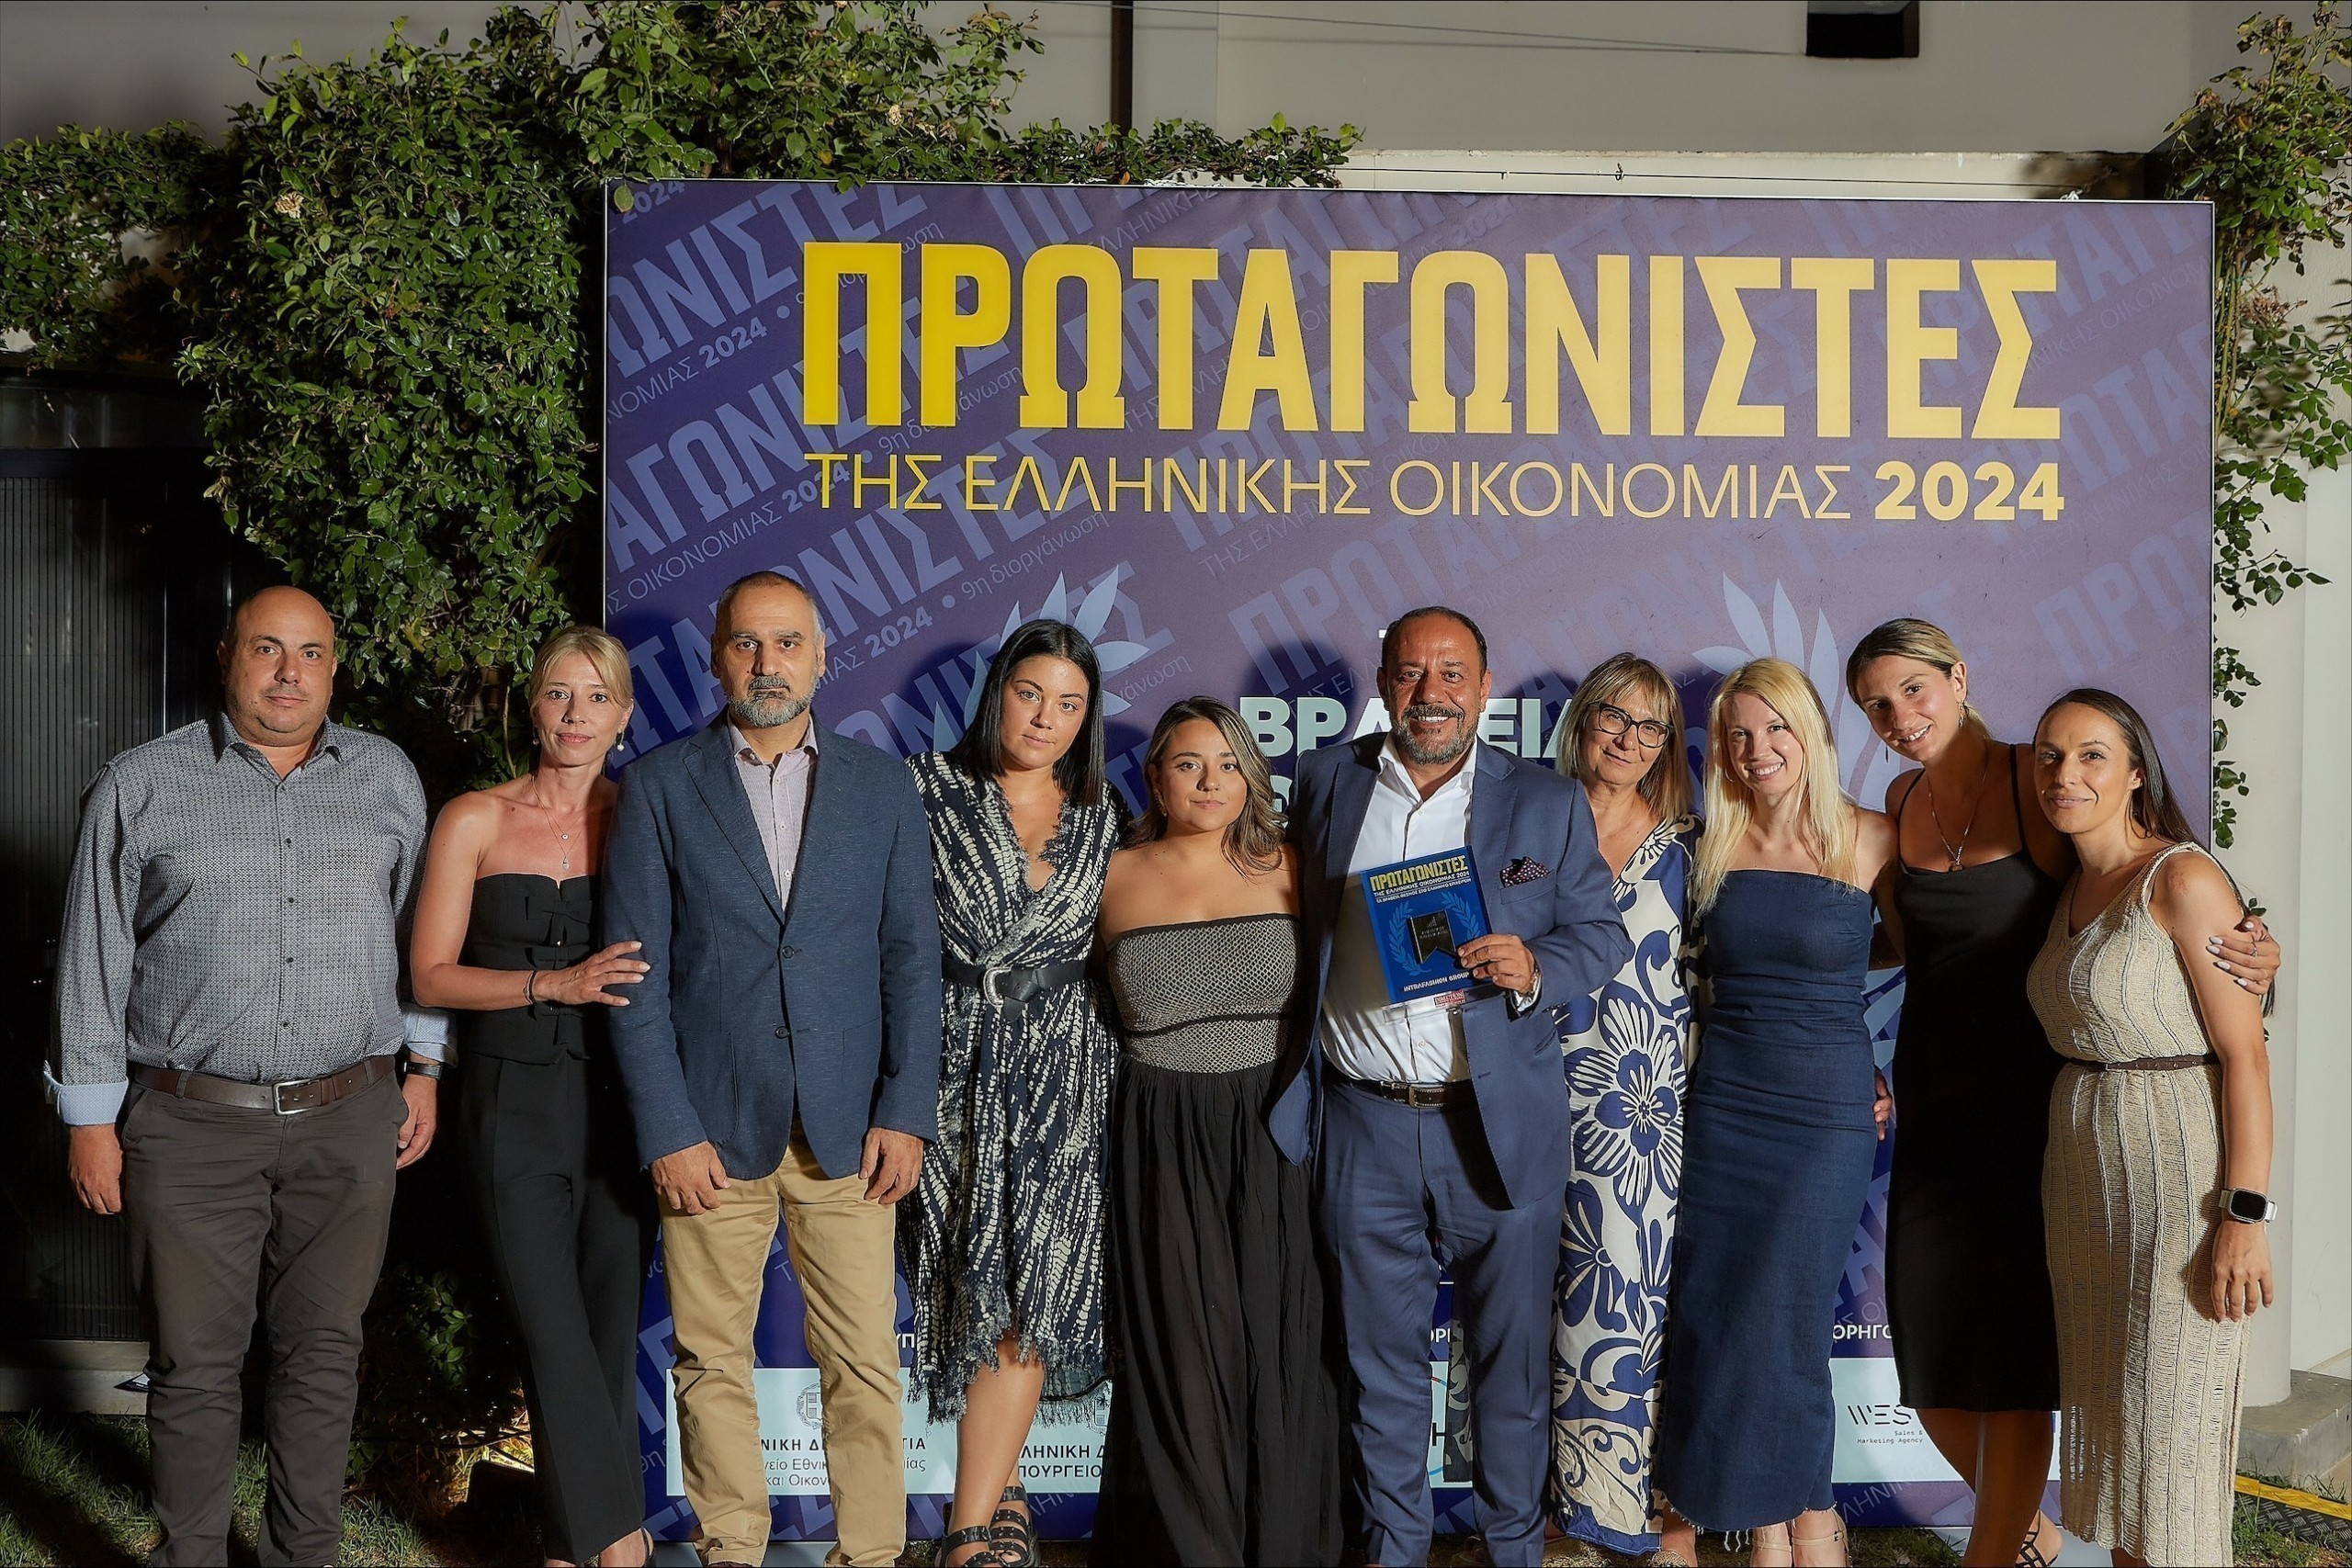 Ο Όμιλος Intrafashion πρωταγωνιστής της ελληνικής οικονομίας (Pic)